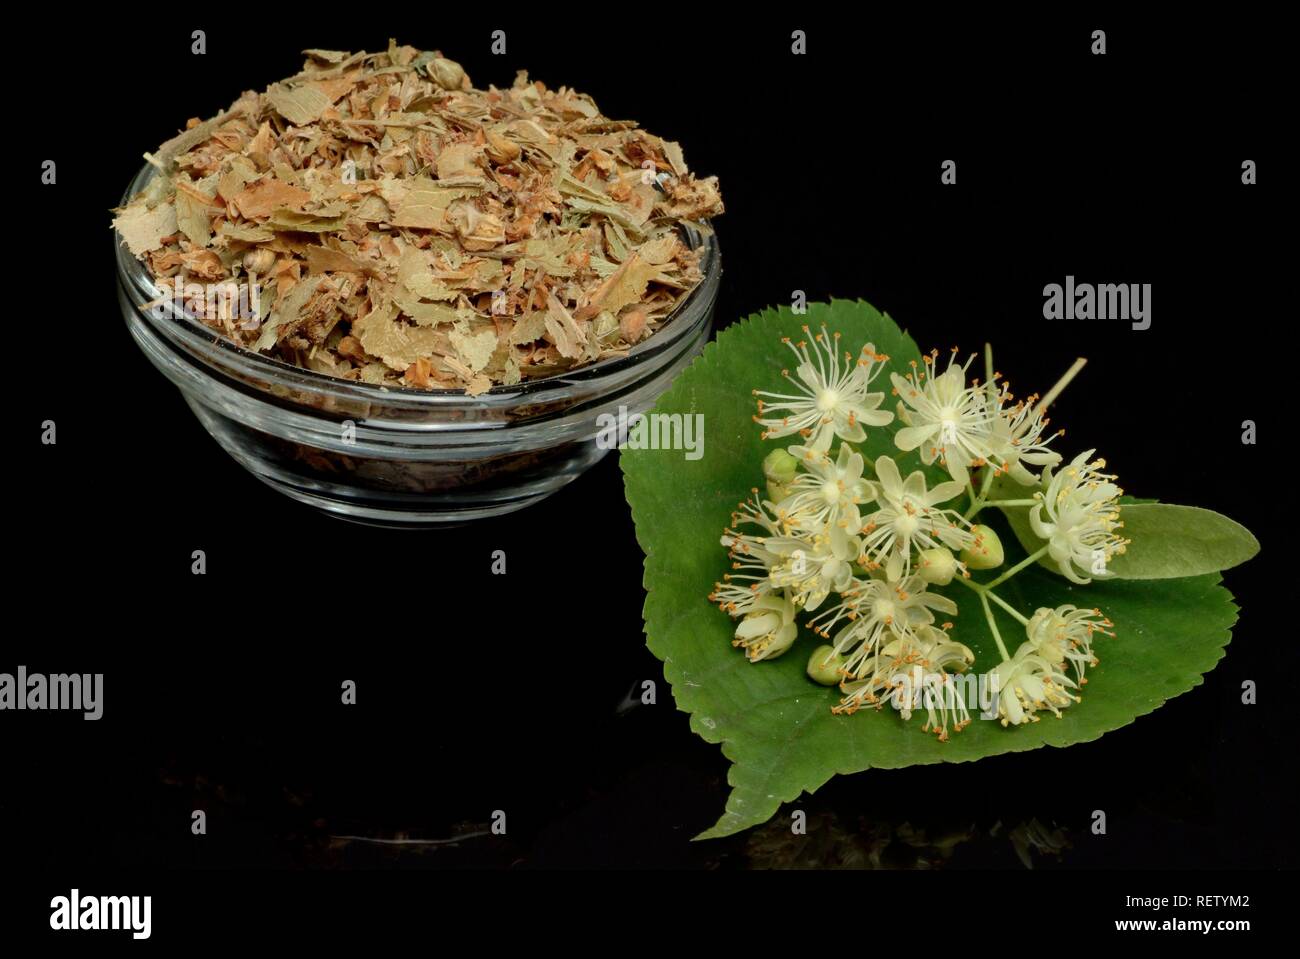 Klein-leaved Lime (Tilia cordata), Blüten, für Medikamente verwendet Stockfoto